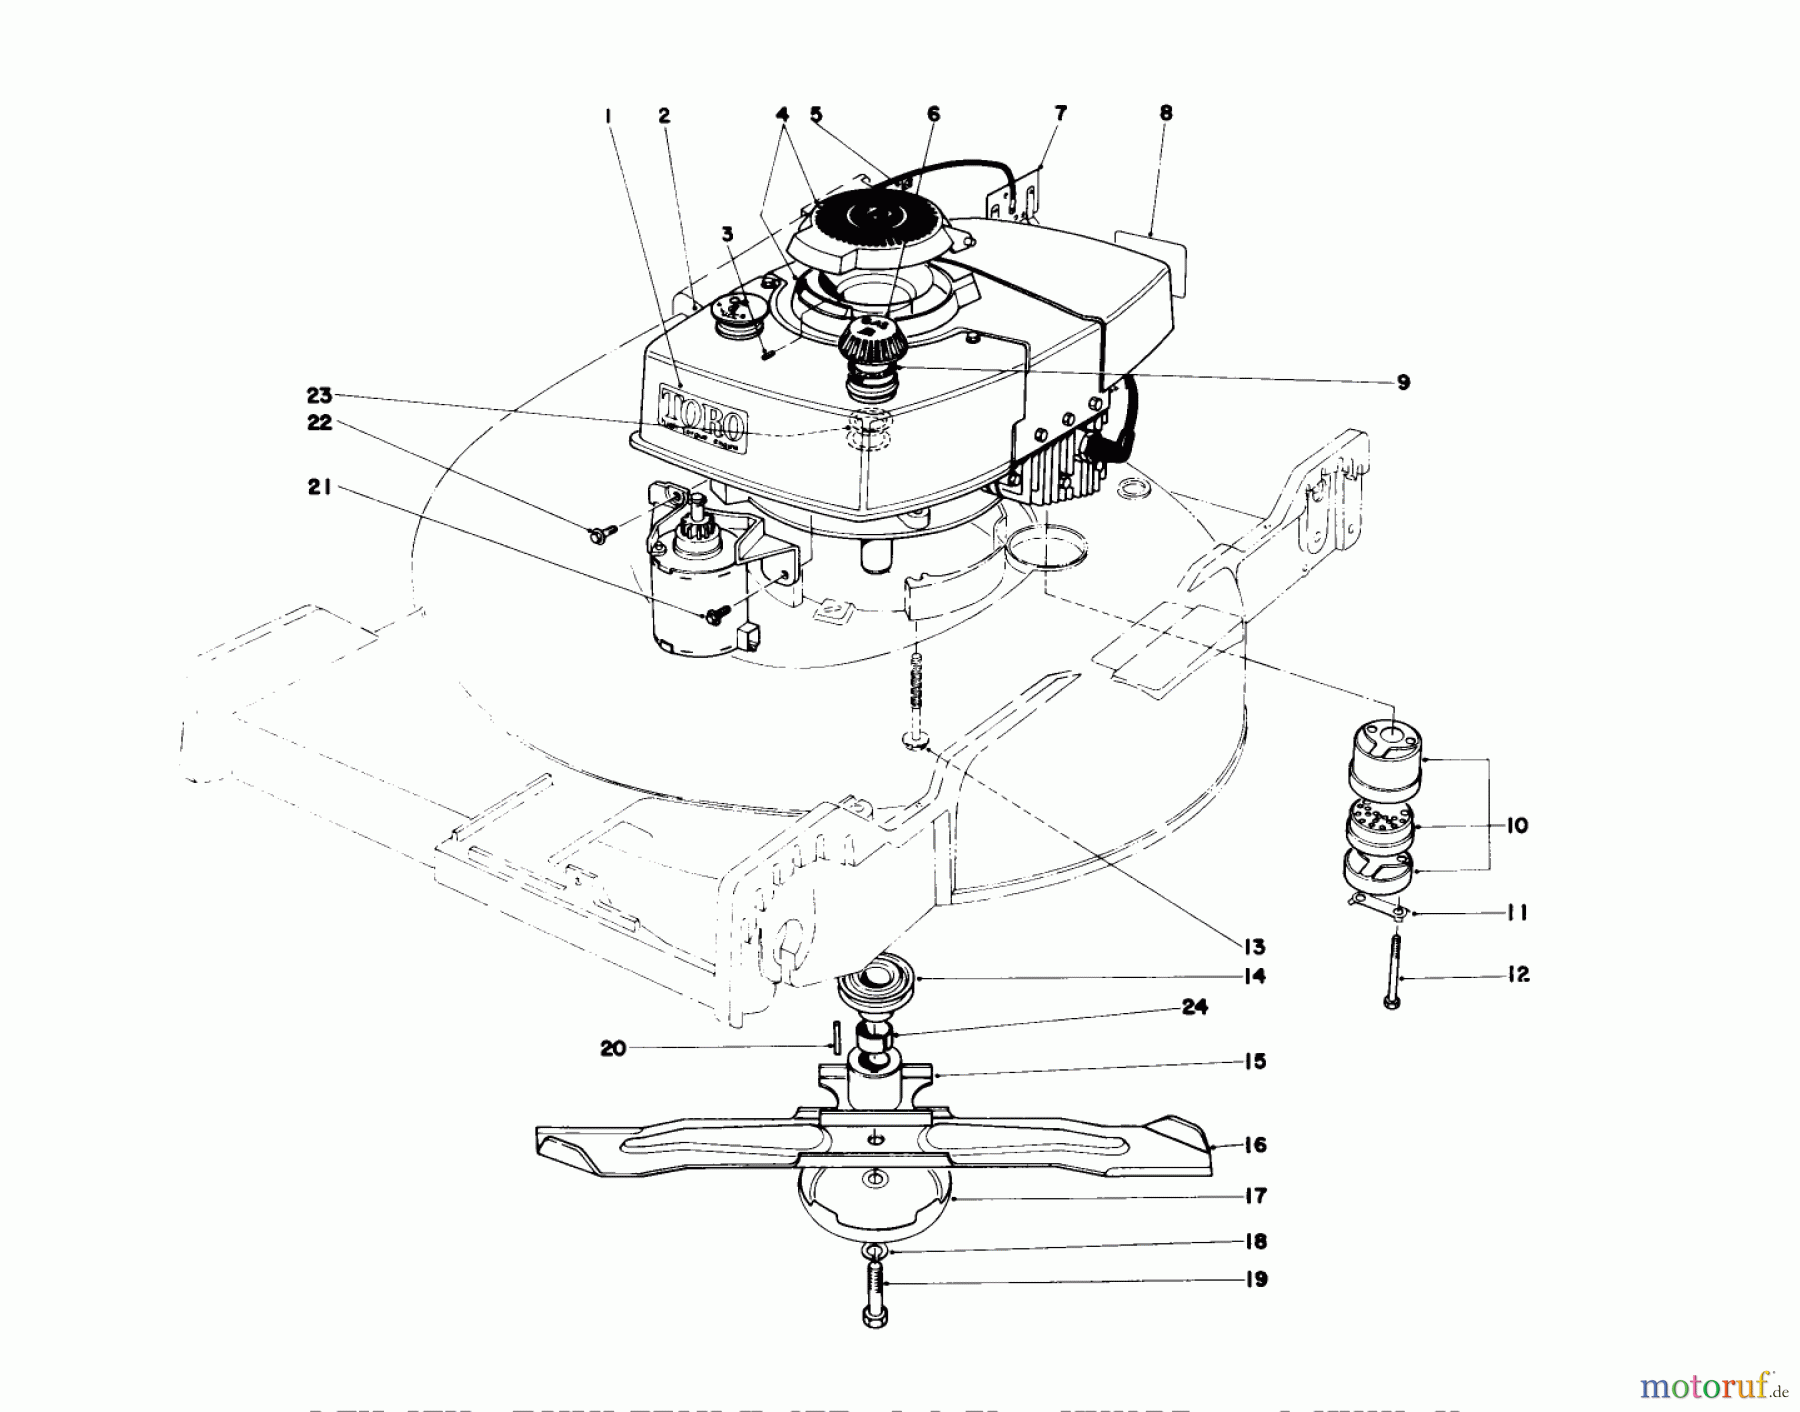  Toro Neu Mowers, Walk-Behind Seite 1 20644 - Toro Lawnmower, 1977 (7000001-7999999) ENGINE ASSEMBLY (MODEL NO. 20644 AND 20657)